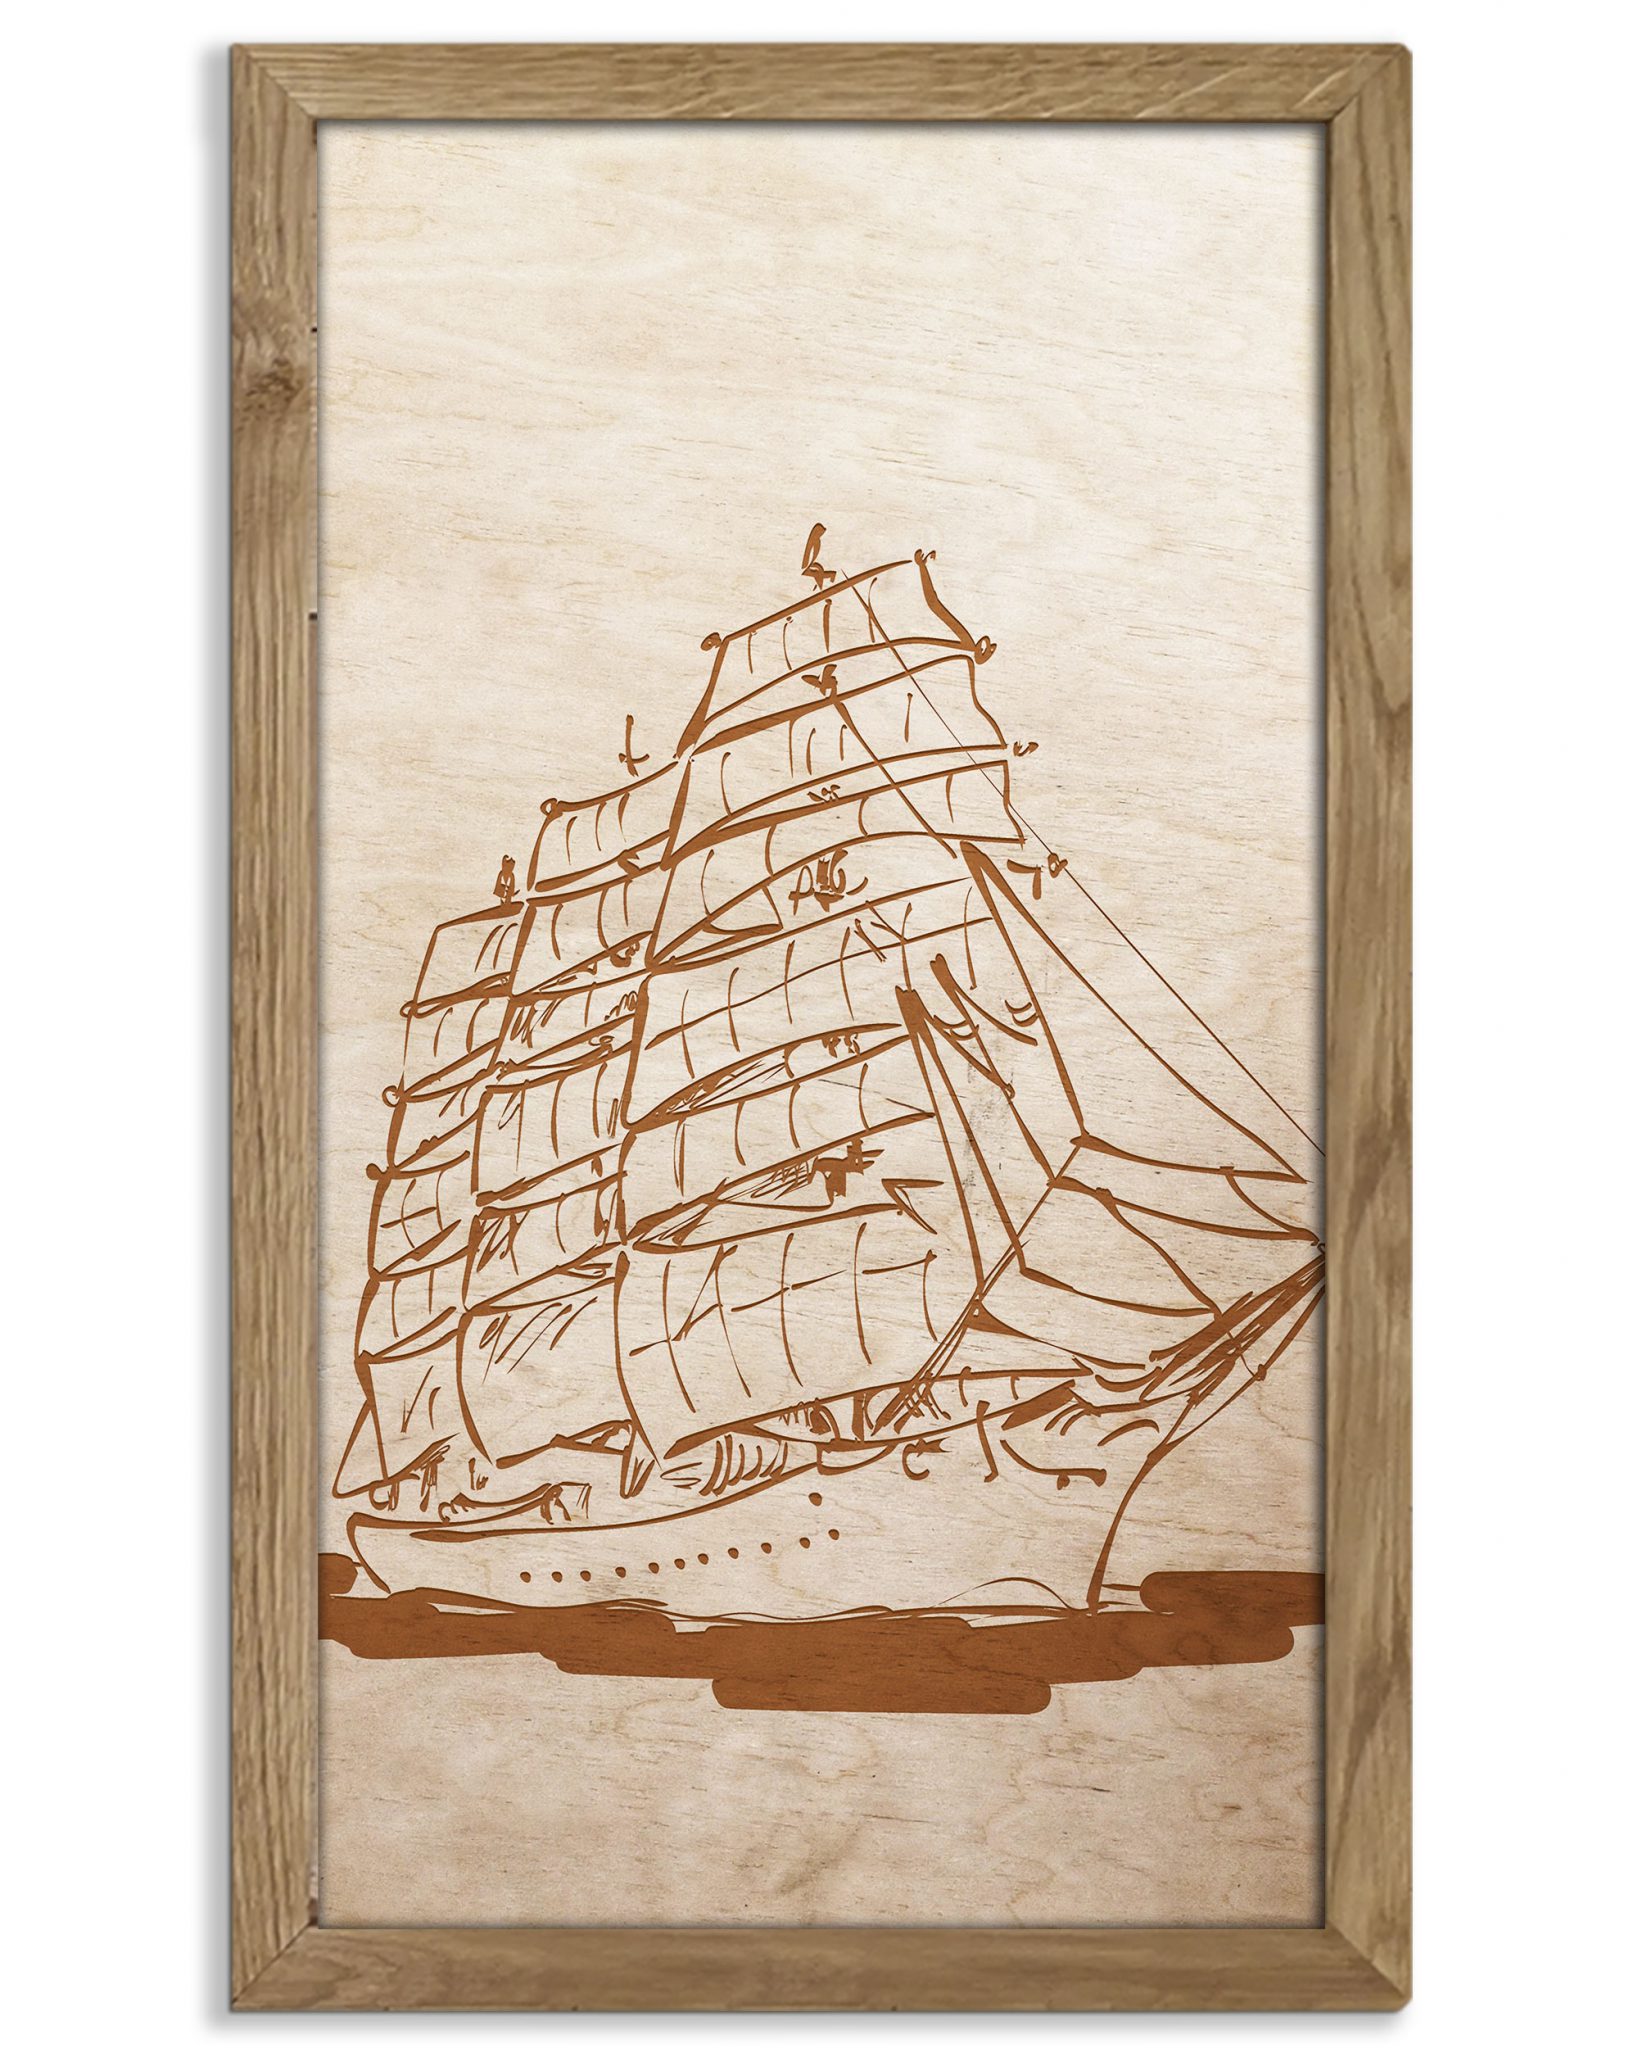 Drewniany obraz - Żaglowiec w dębowej ramie 50x30cm Dąb, Orzech, Heban